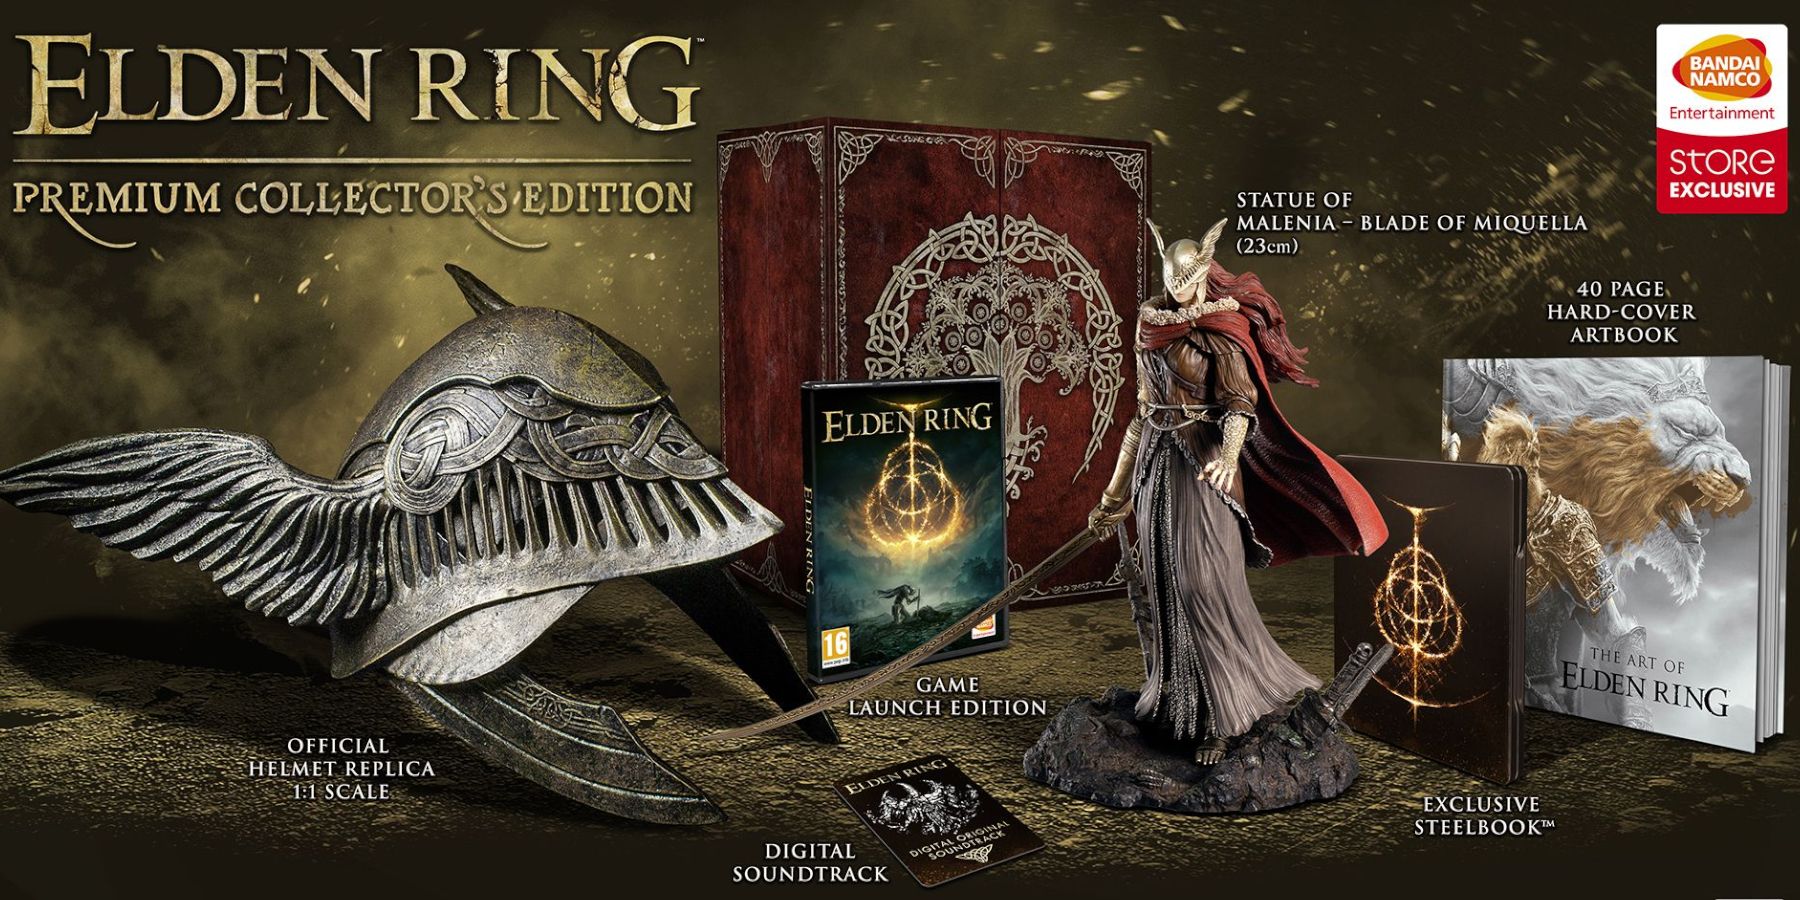 Elden Ring Collectors Edition